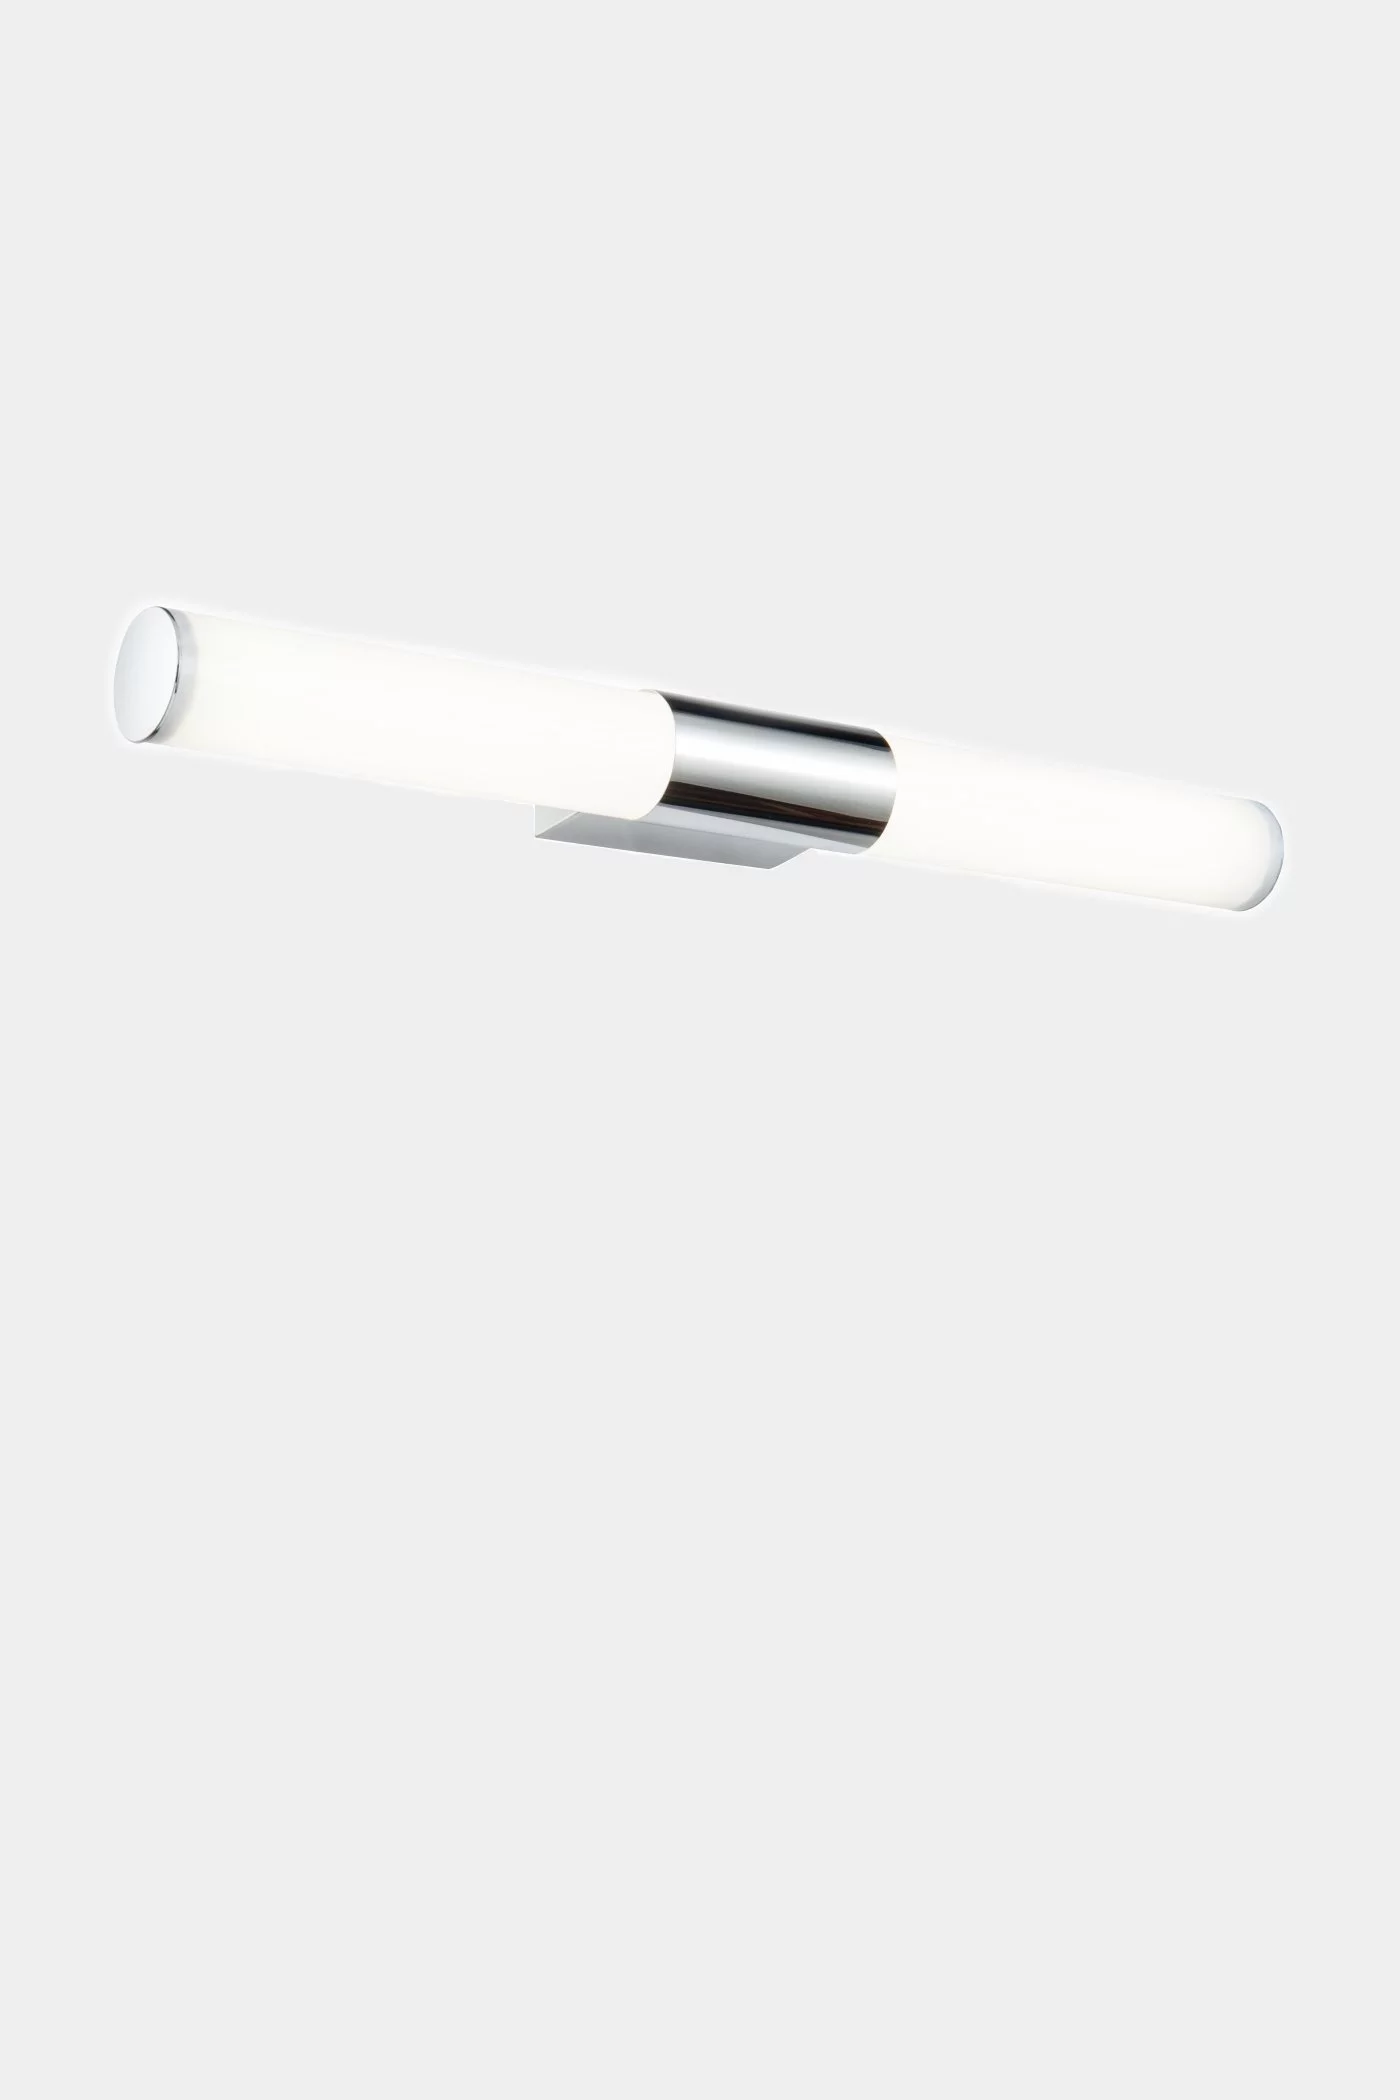   
                        
                        Підсвітка для ванної MAYTONI (Німеччина) 16124    
                         у стилі Хай-тек.  
                        Тип джерела світла: вбудований led-модуль, незмінний.                                                 Кольори плафонів і підвісок: Білий.                         Матеріал: Пластик.                          фото 1